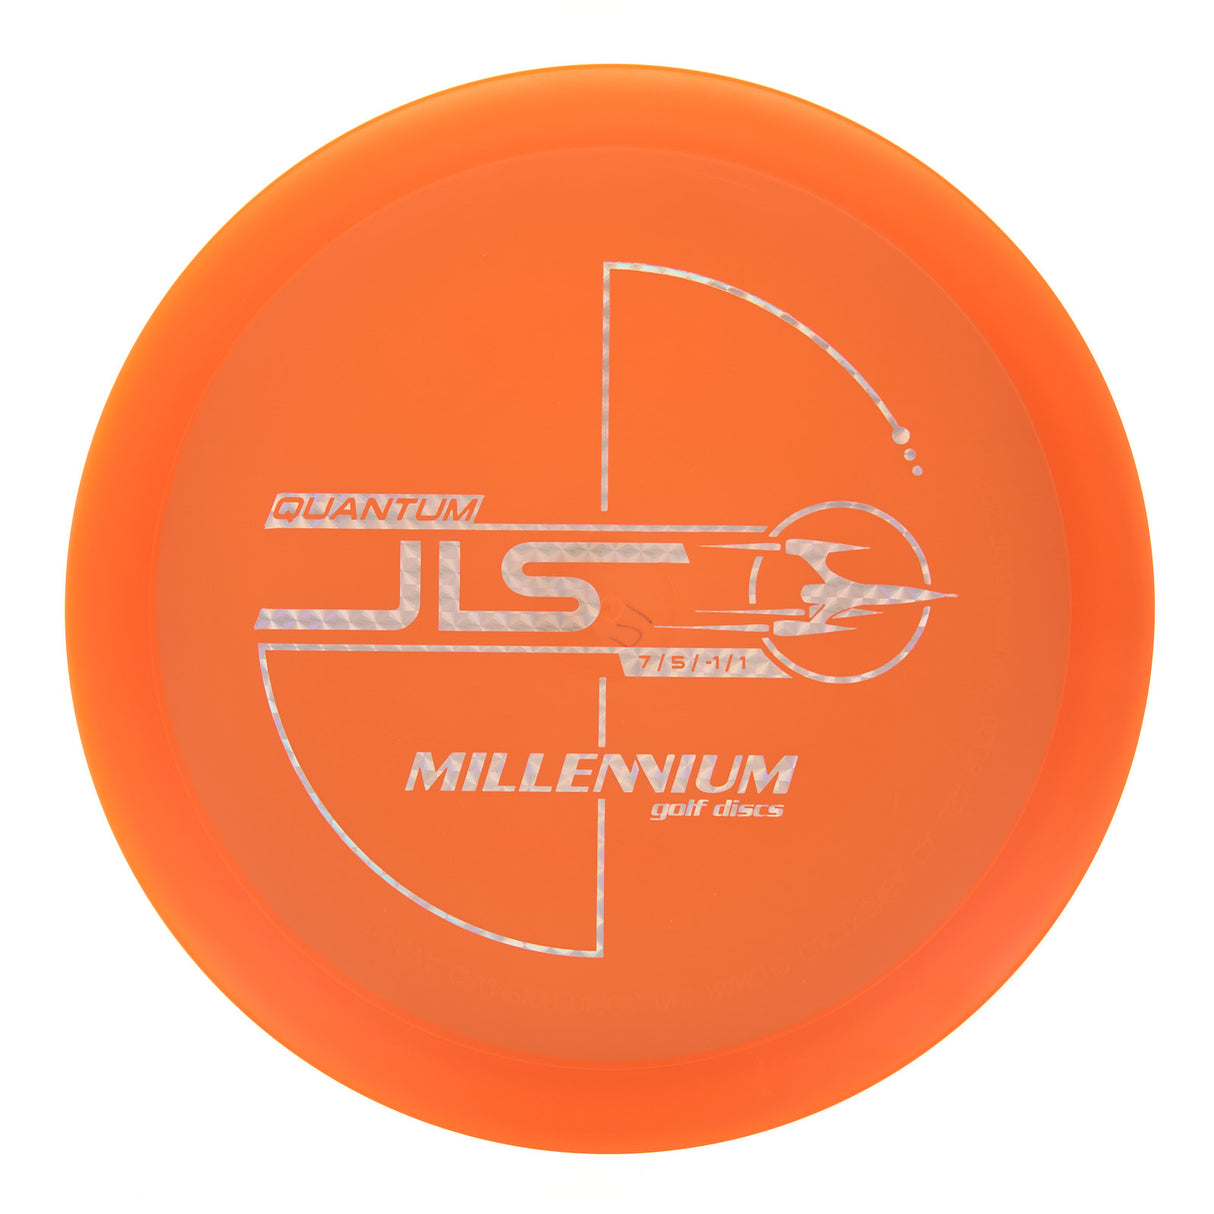 Millennium JLS - Quantum  172g | Style 0003